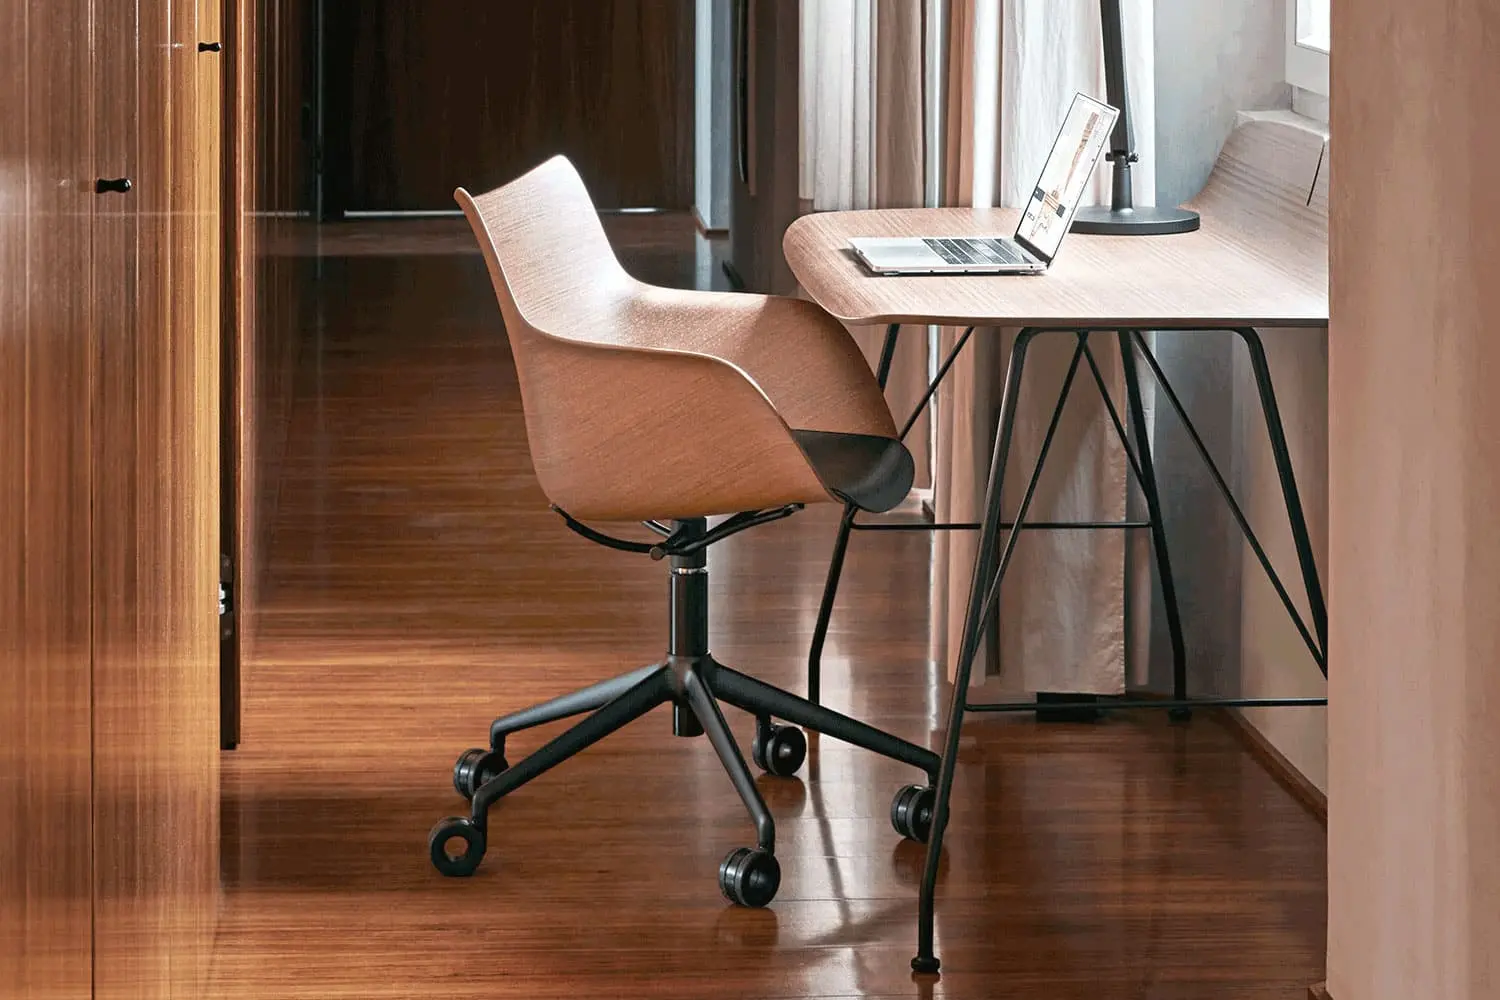 Ghế văn phòng bằng gỗ hiện đại sở hữu nhiều ưu điểm về diện mạo giúp tạo được điểm nhấn